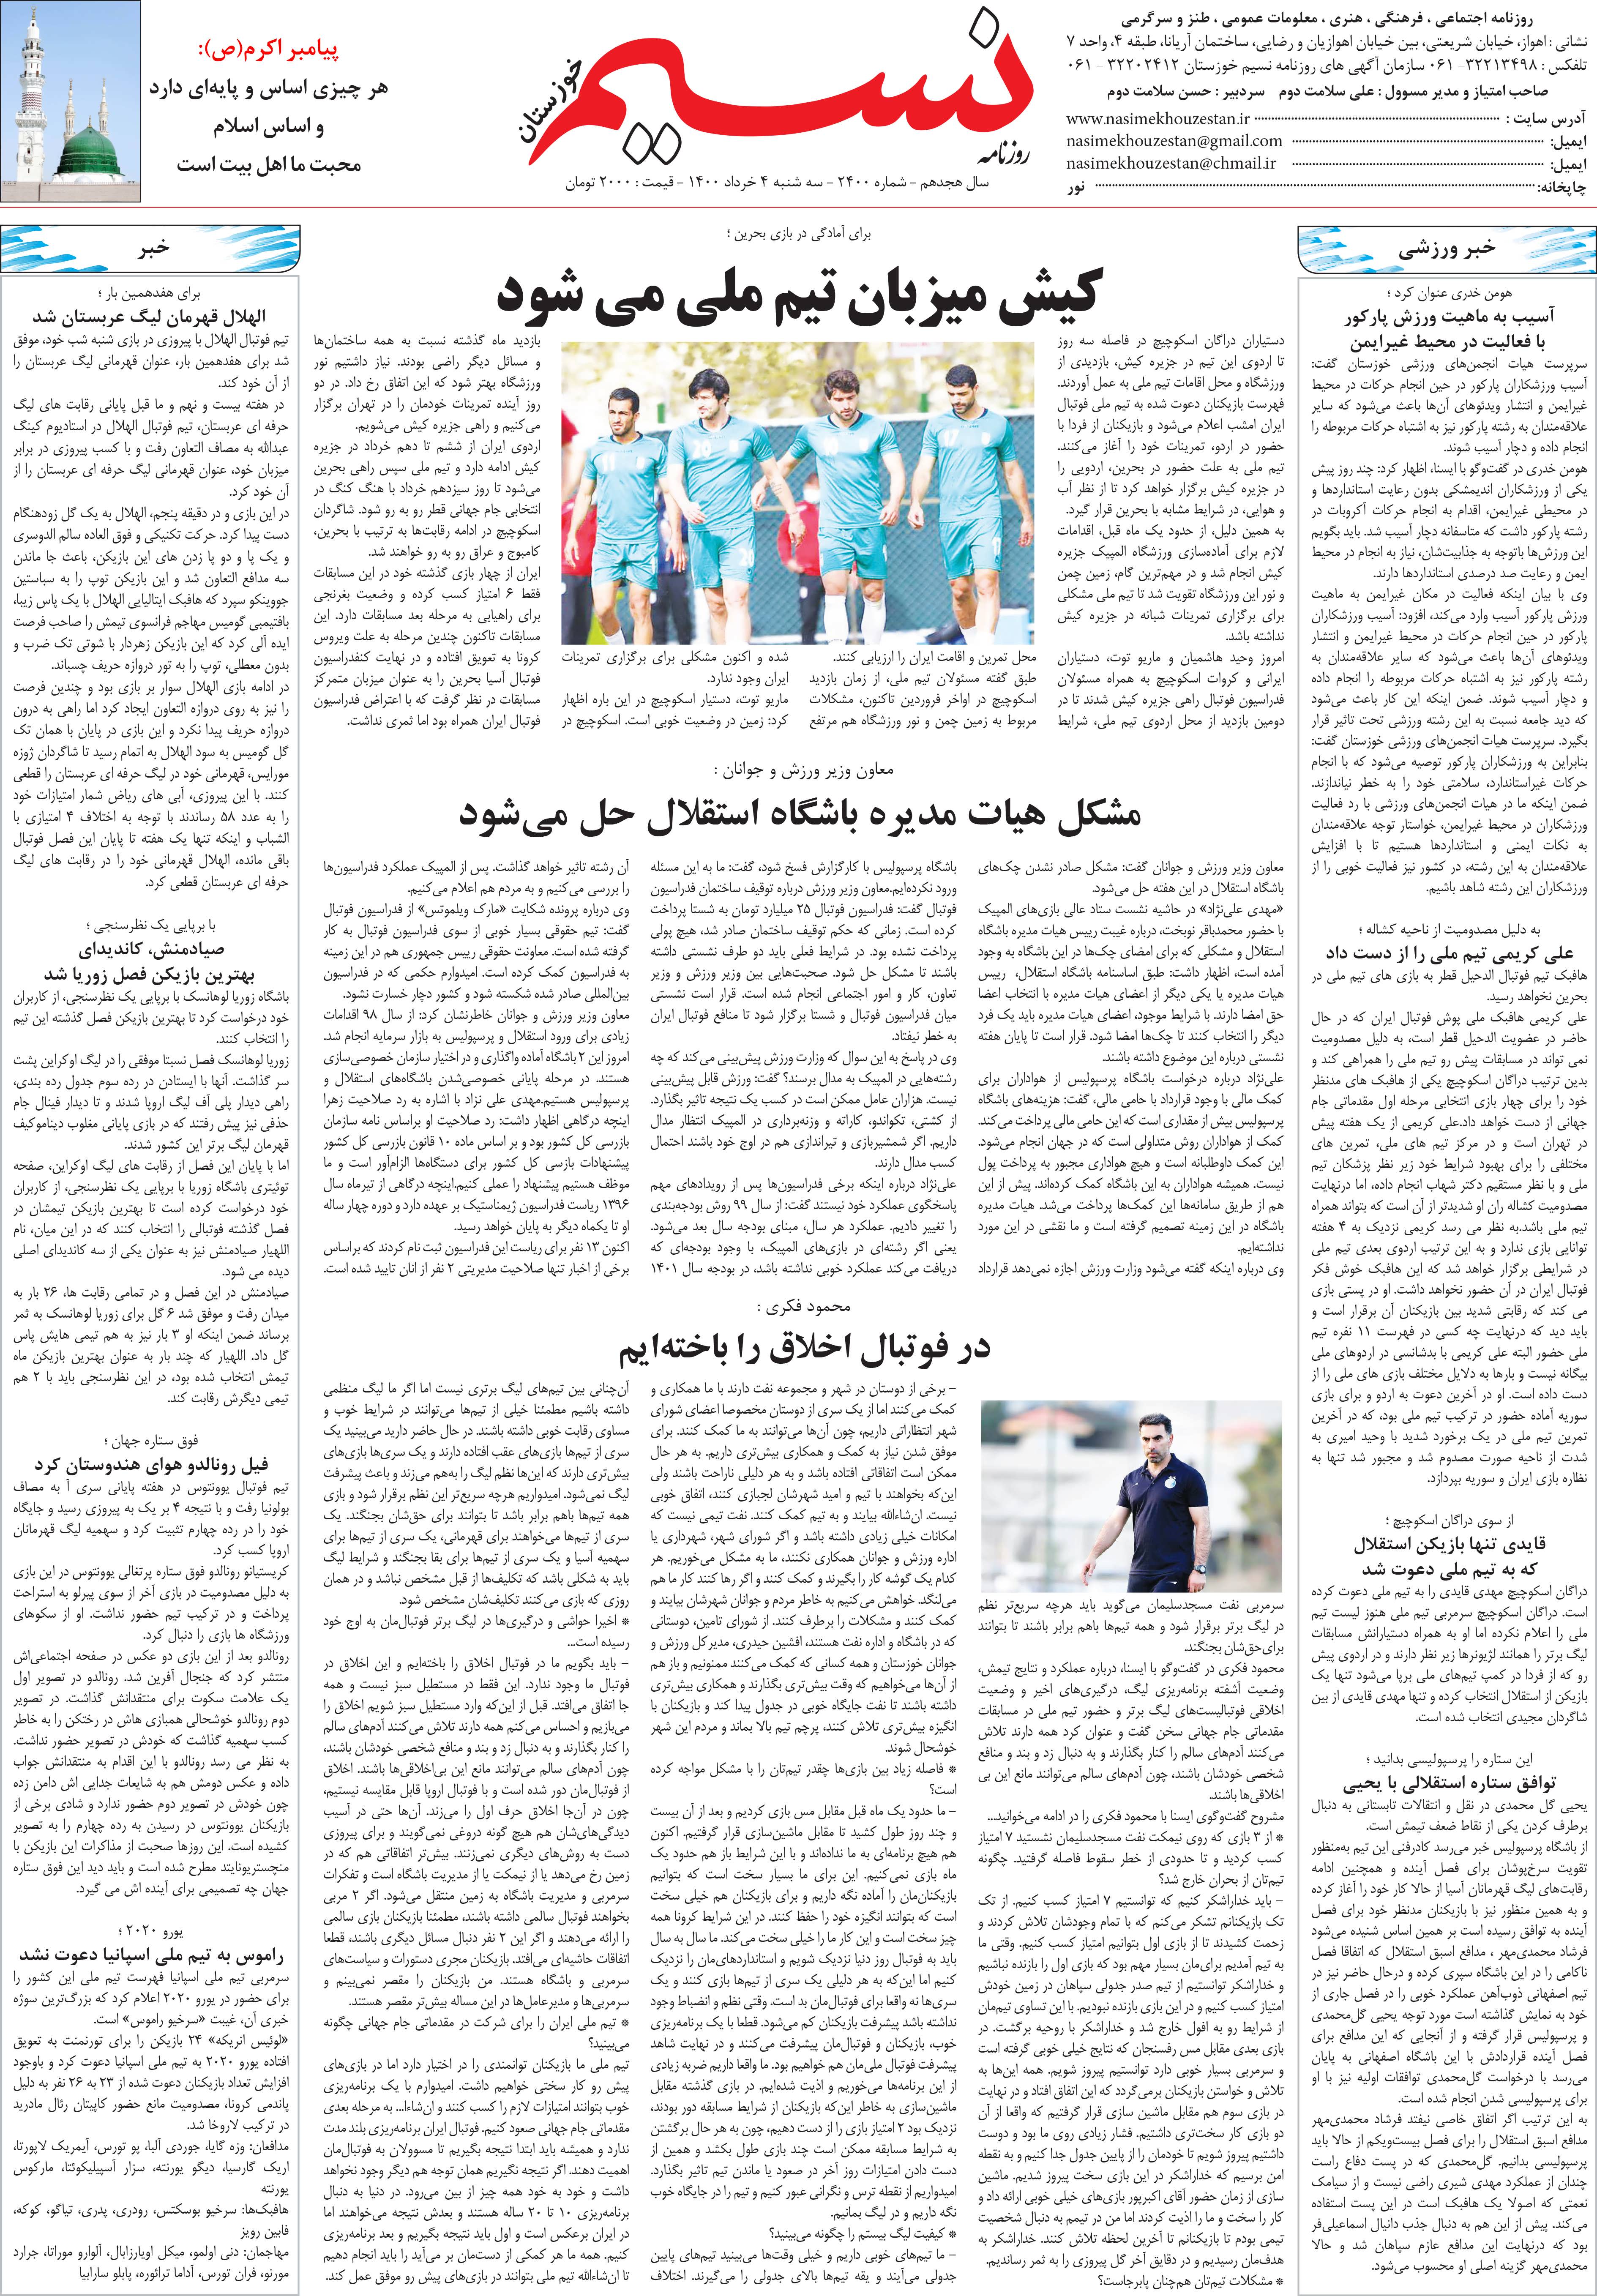 صفحه آخر روزنامه نسیم شماره 2400